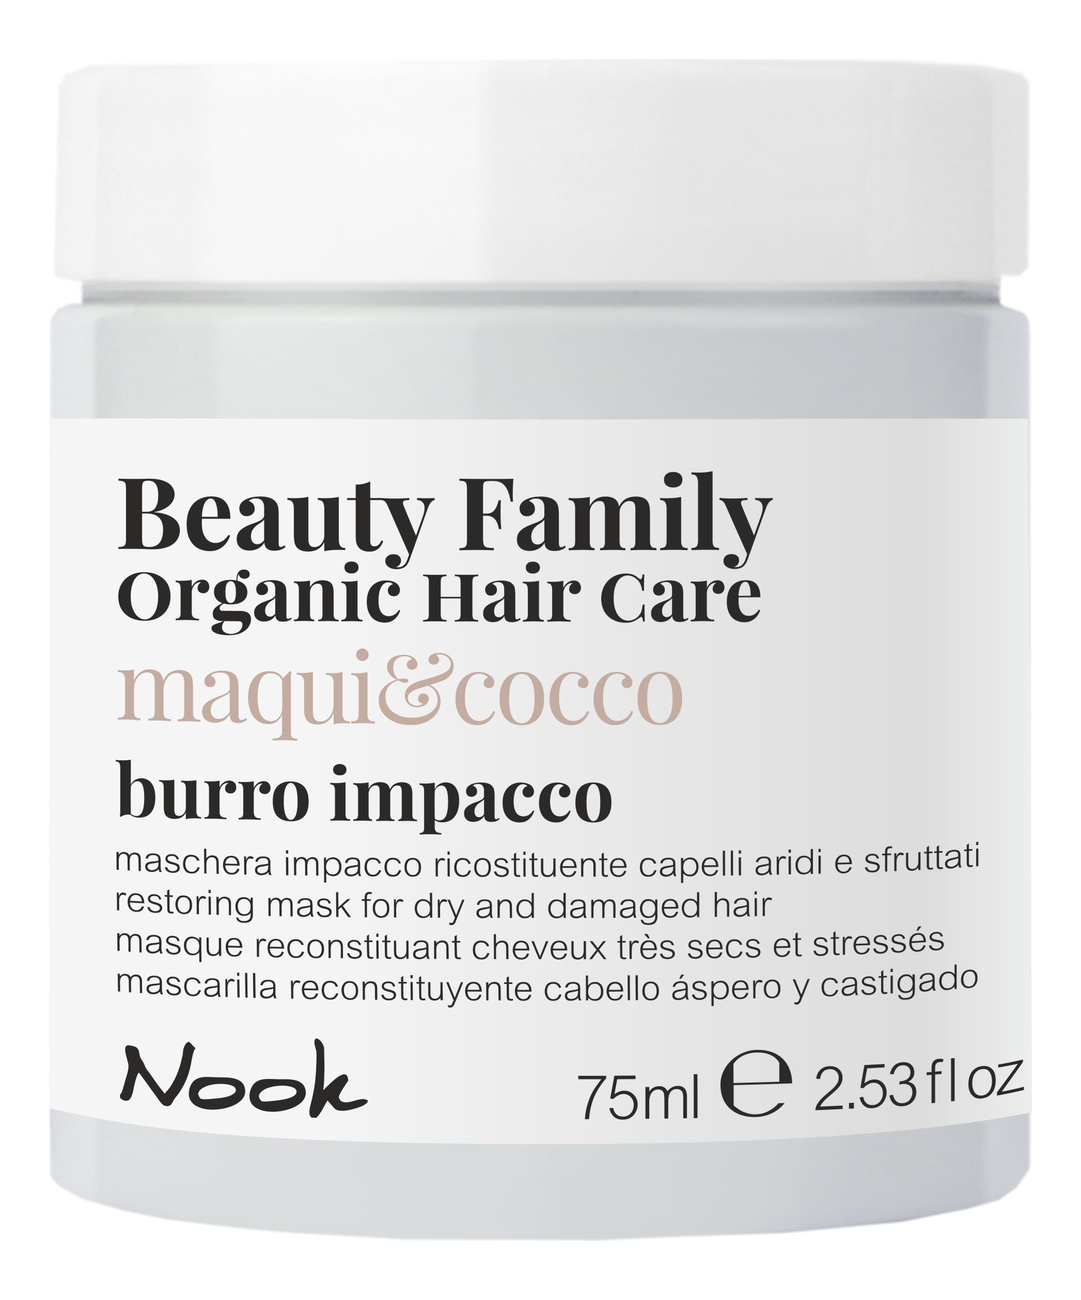 Восстанавливающая маска для сухих и поврежденных волос Beauty Family Burro Impacco Maqui & Cocco: Маска 75мл